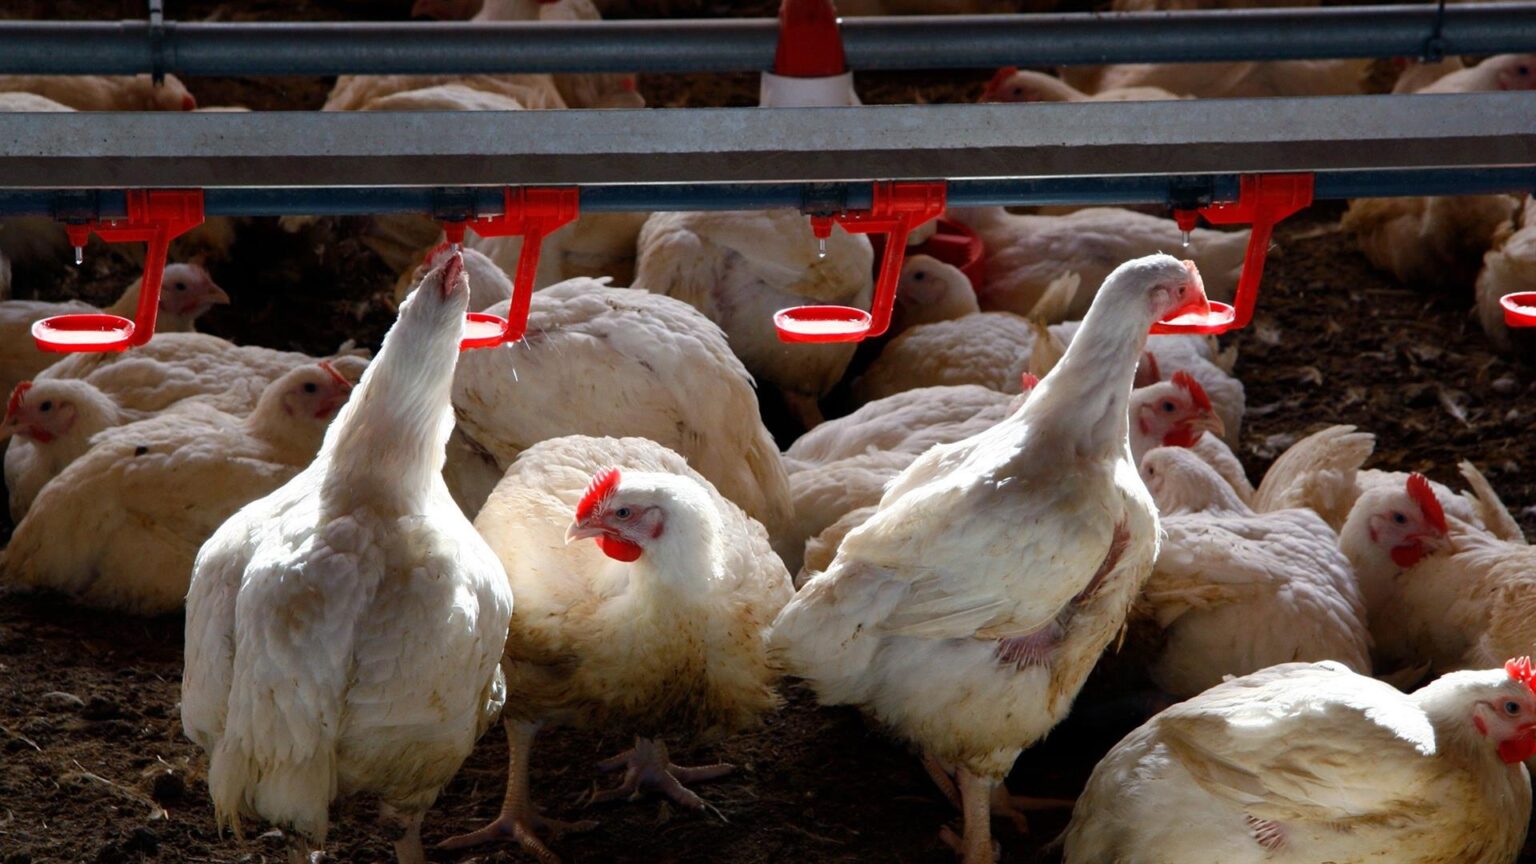 Detectado en Guadalajara el primer caso en España de gripe aviar en humanos